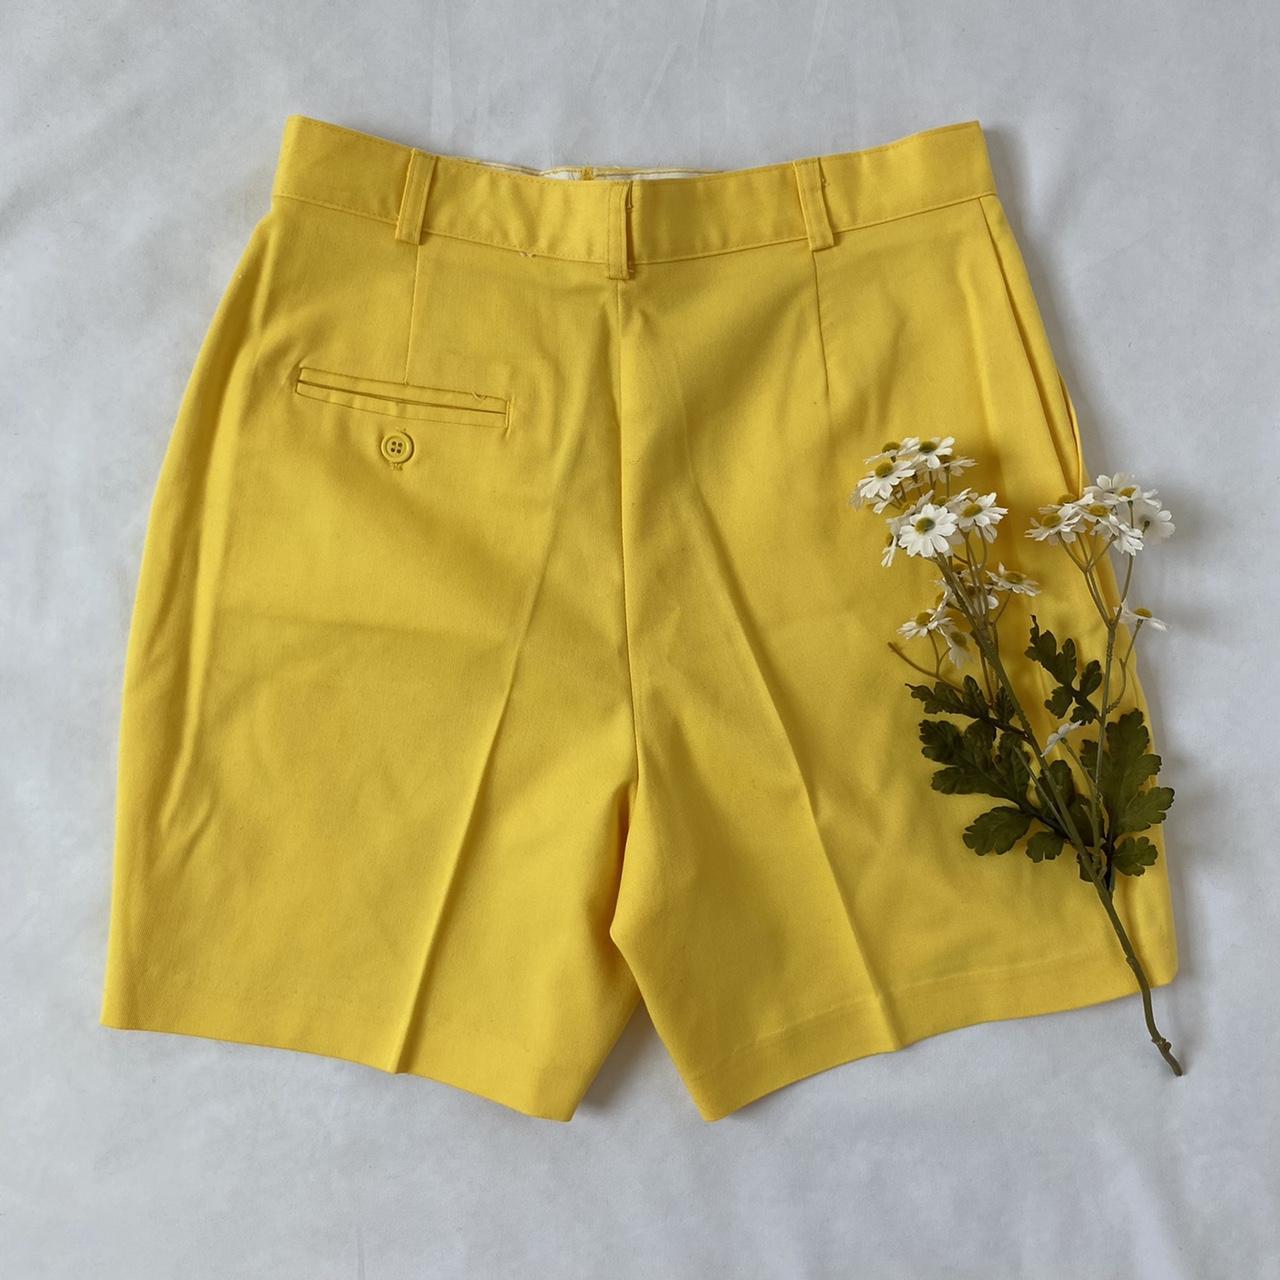 Sears Women's Yellow Shorts (2)